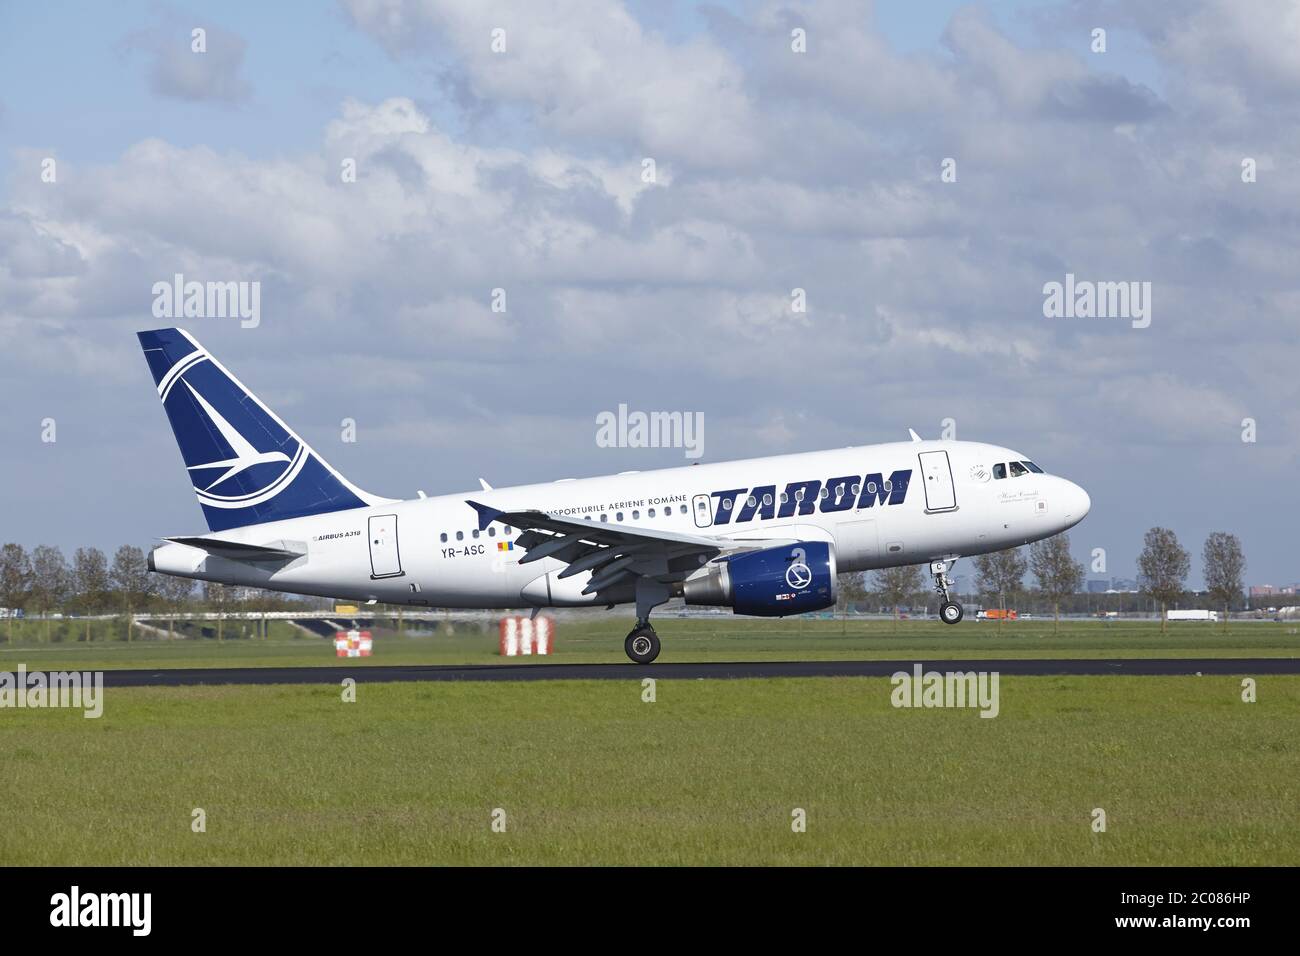 Aeroporto Schiphol di Amsterdam - Airbus A318 da Tarom Land Foto Stock